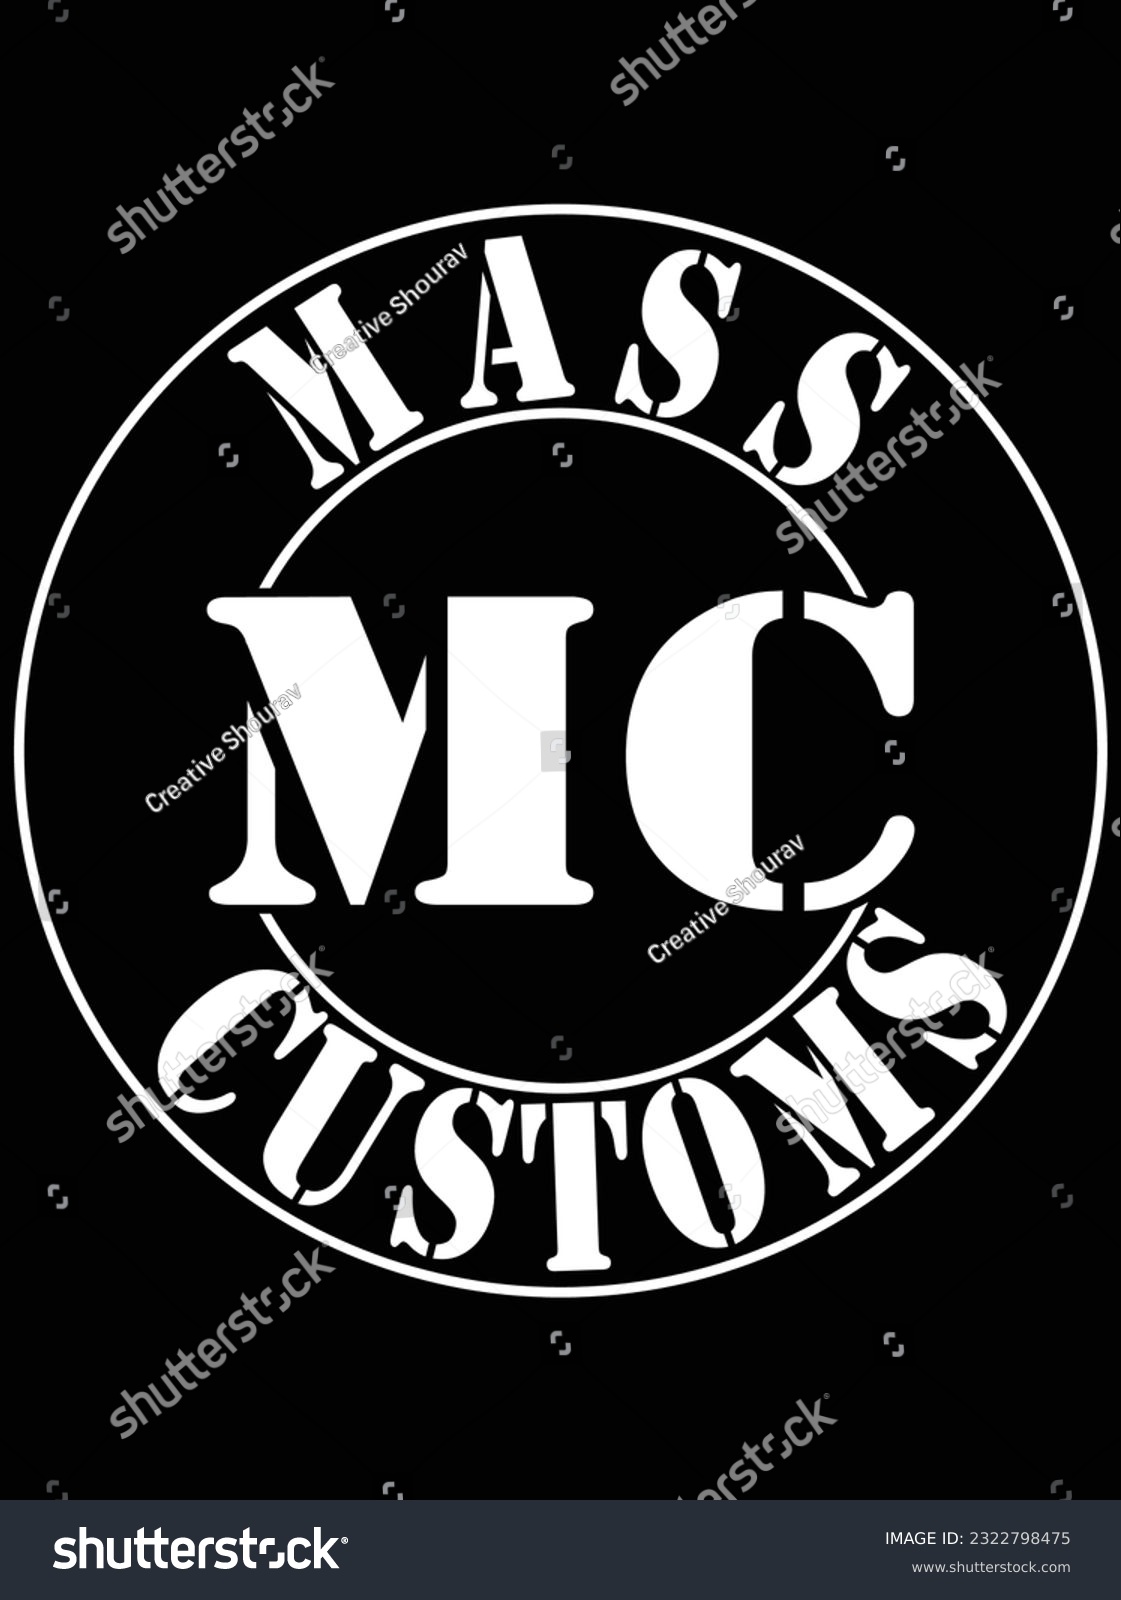 SVG of Mass mc customs vector art design, eps file. design file for t-shirt. SVG, EPS cuttable design file svg